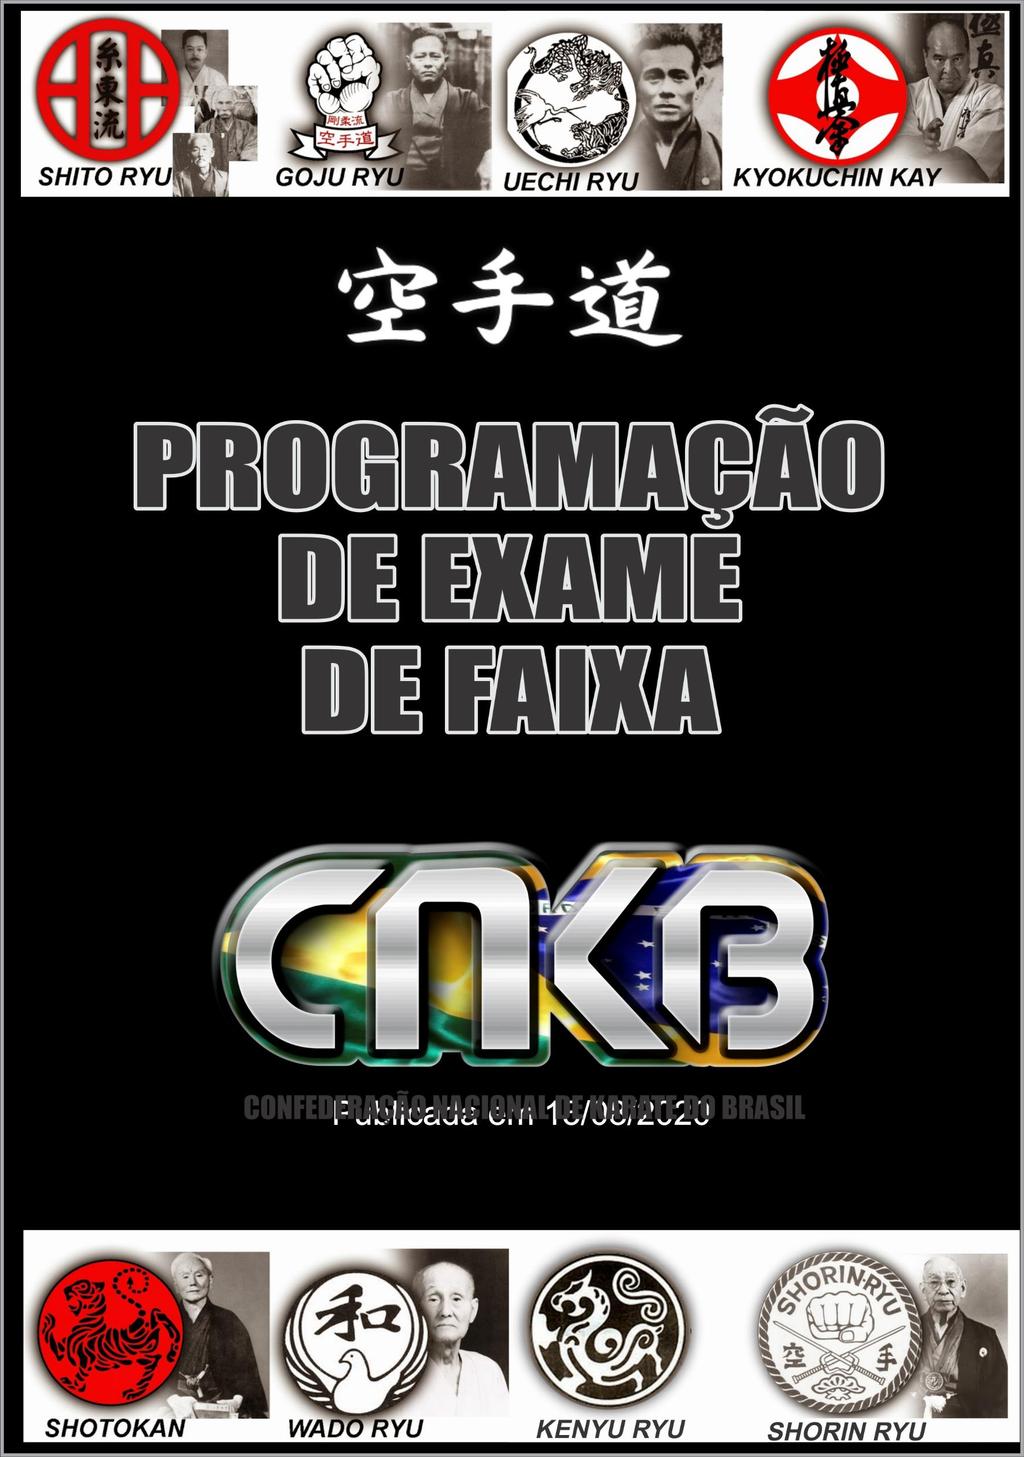 PROGRAMAÇÃO DE EXAME DE GRADUAÇÃO CNKB - PDF Download grátis